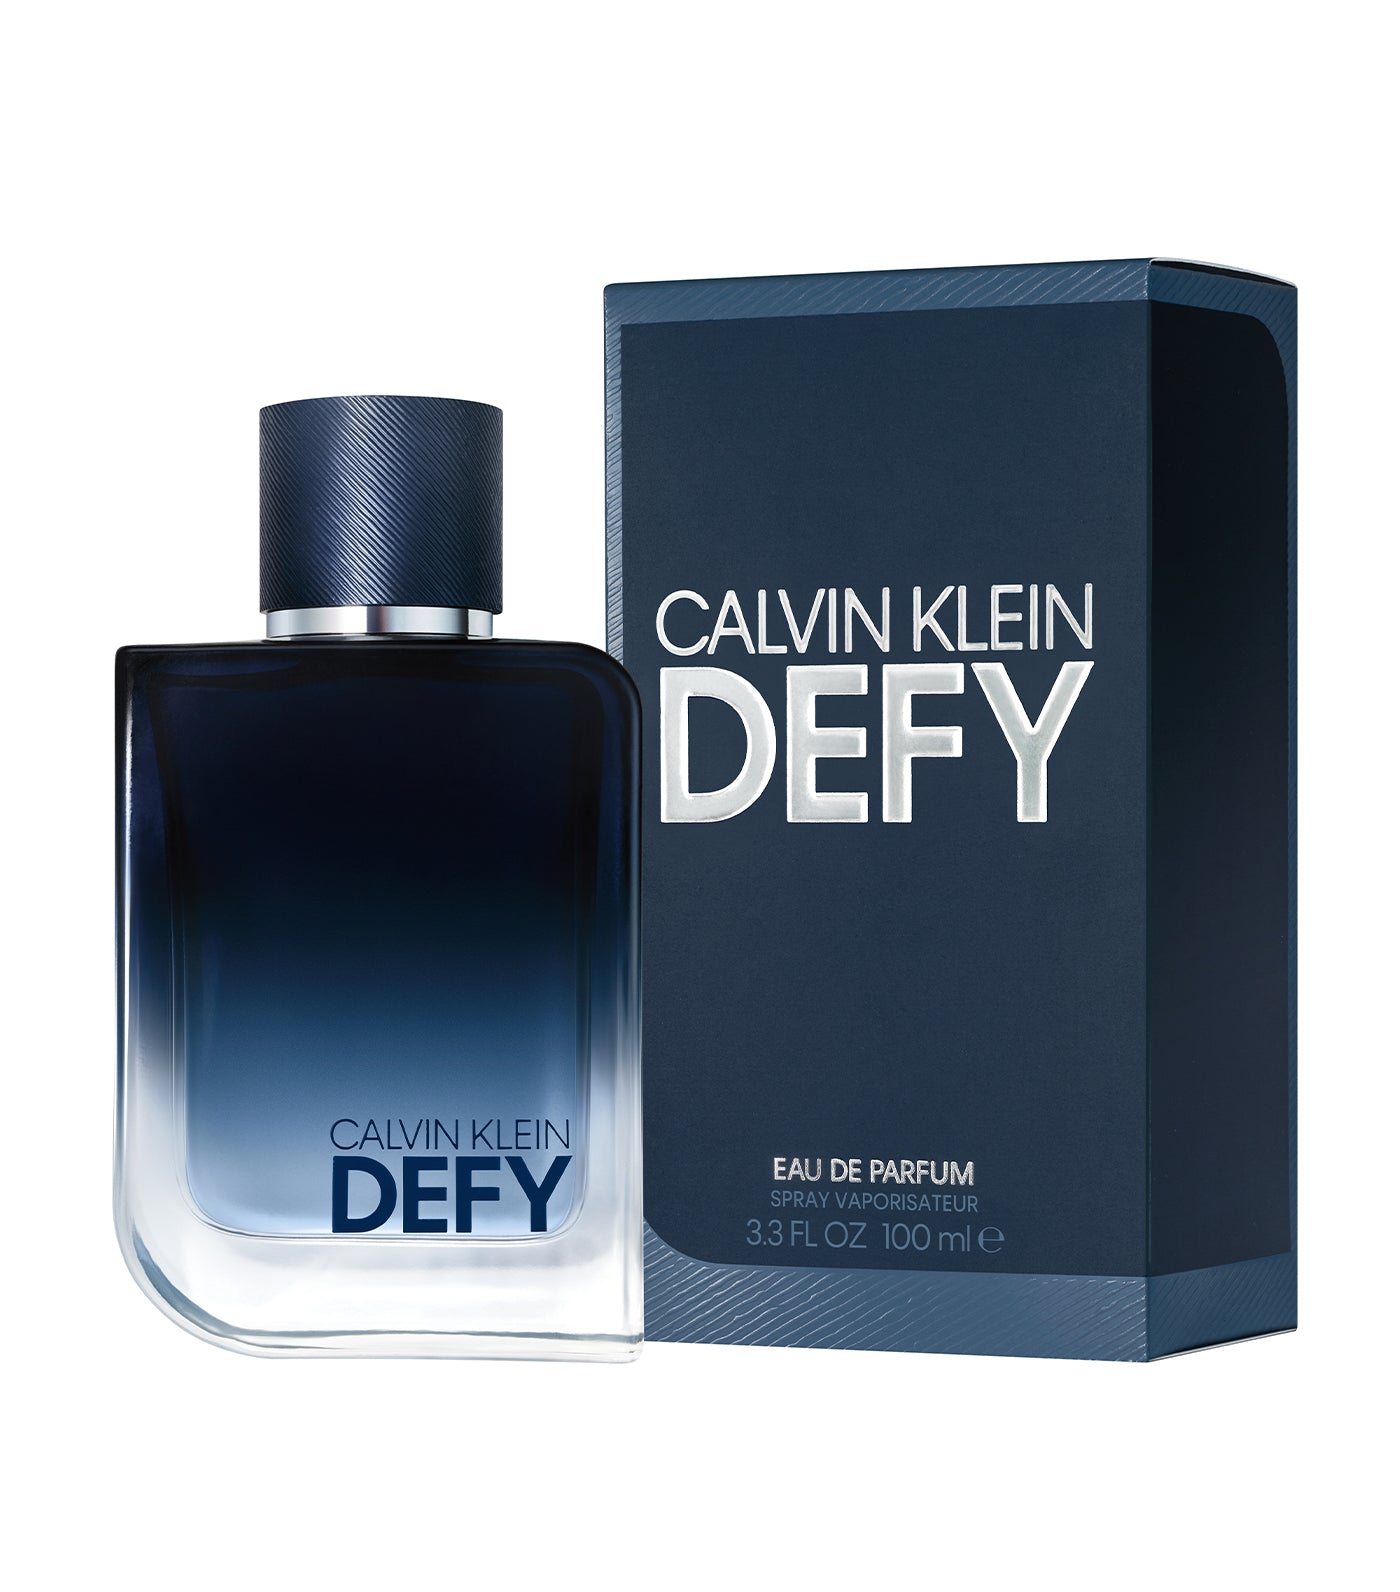 Defy Eau de Parfum for Men